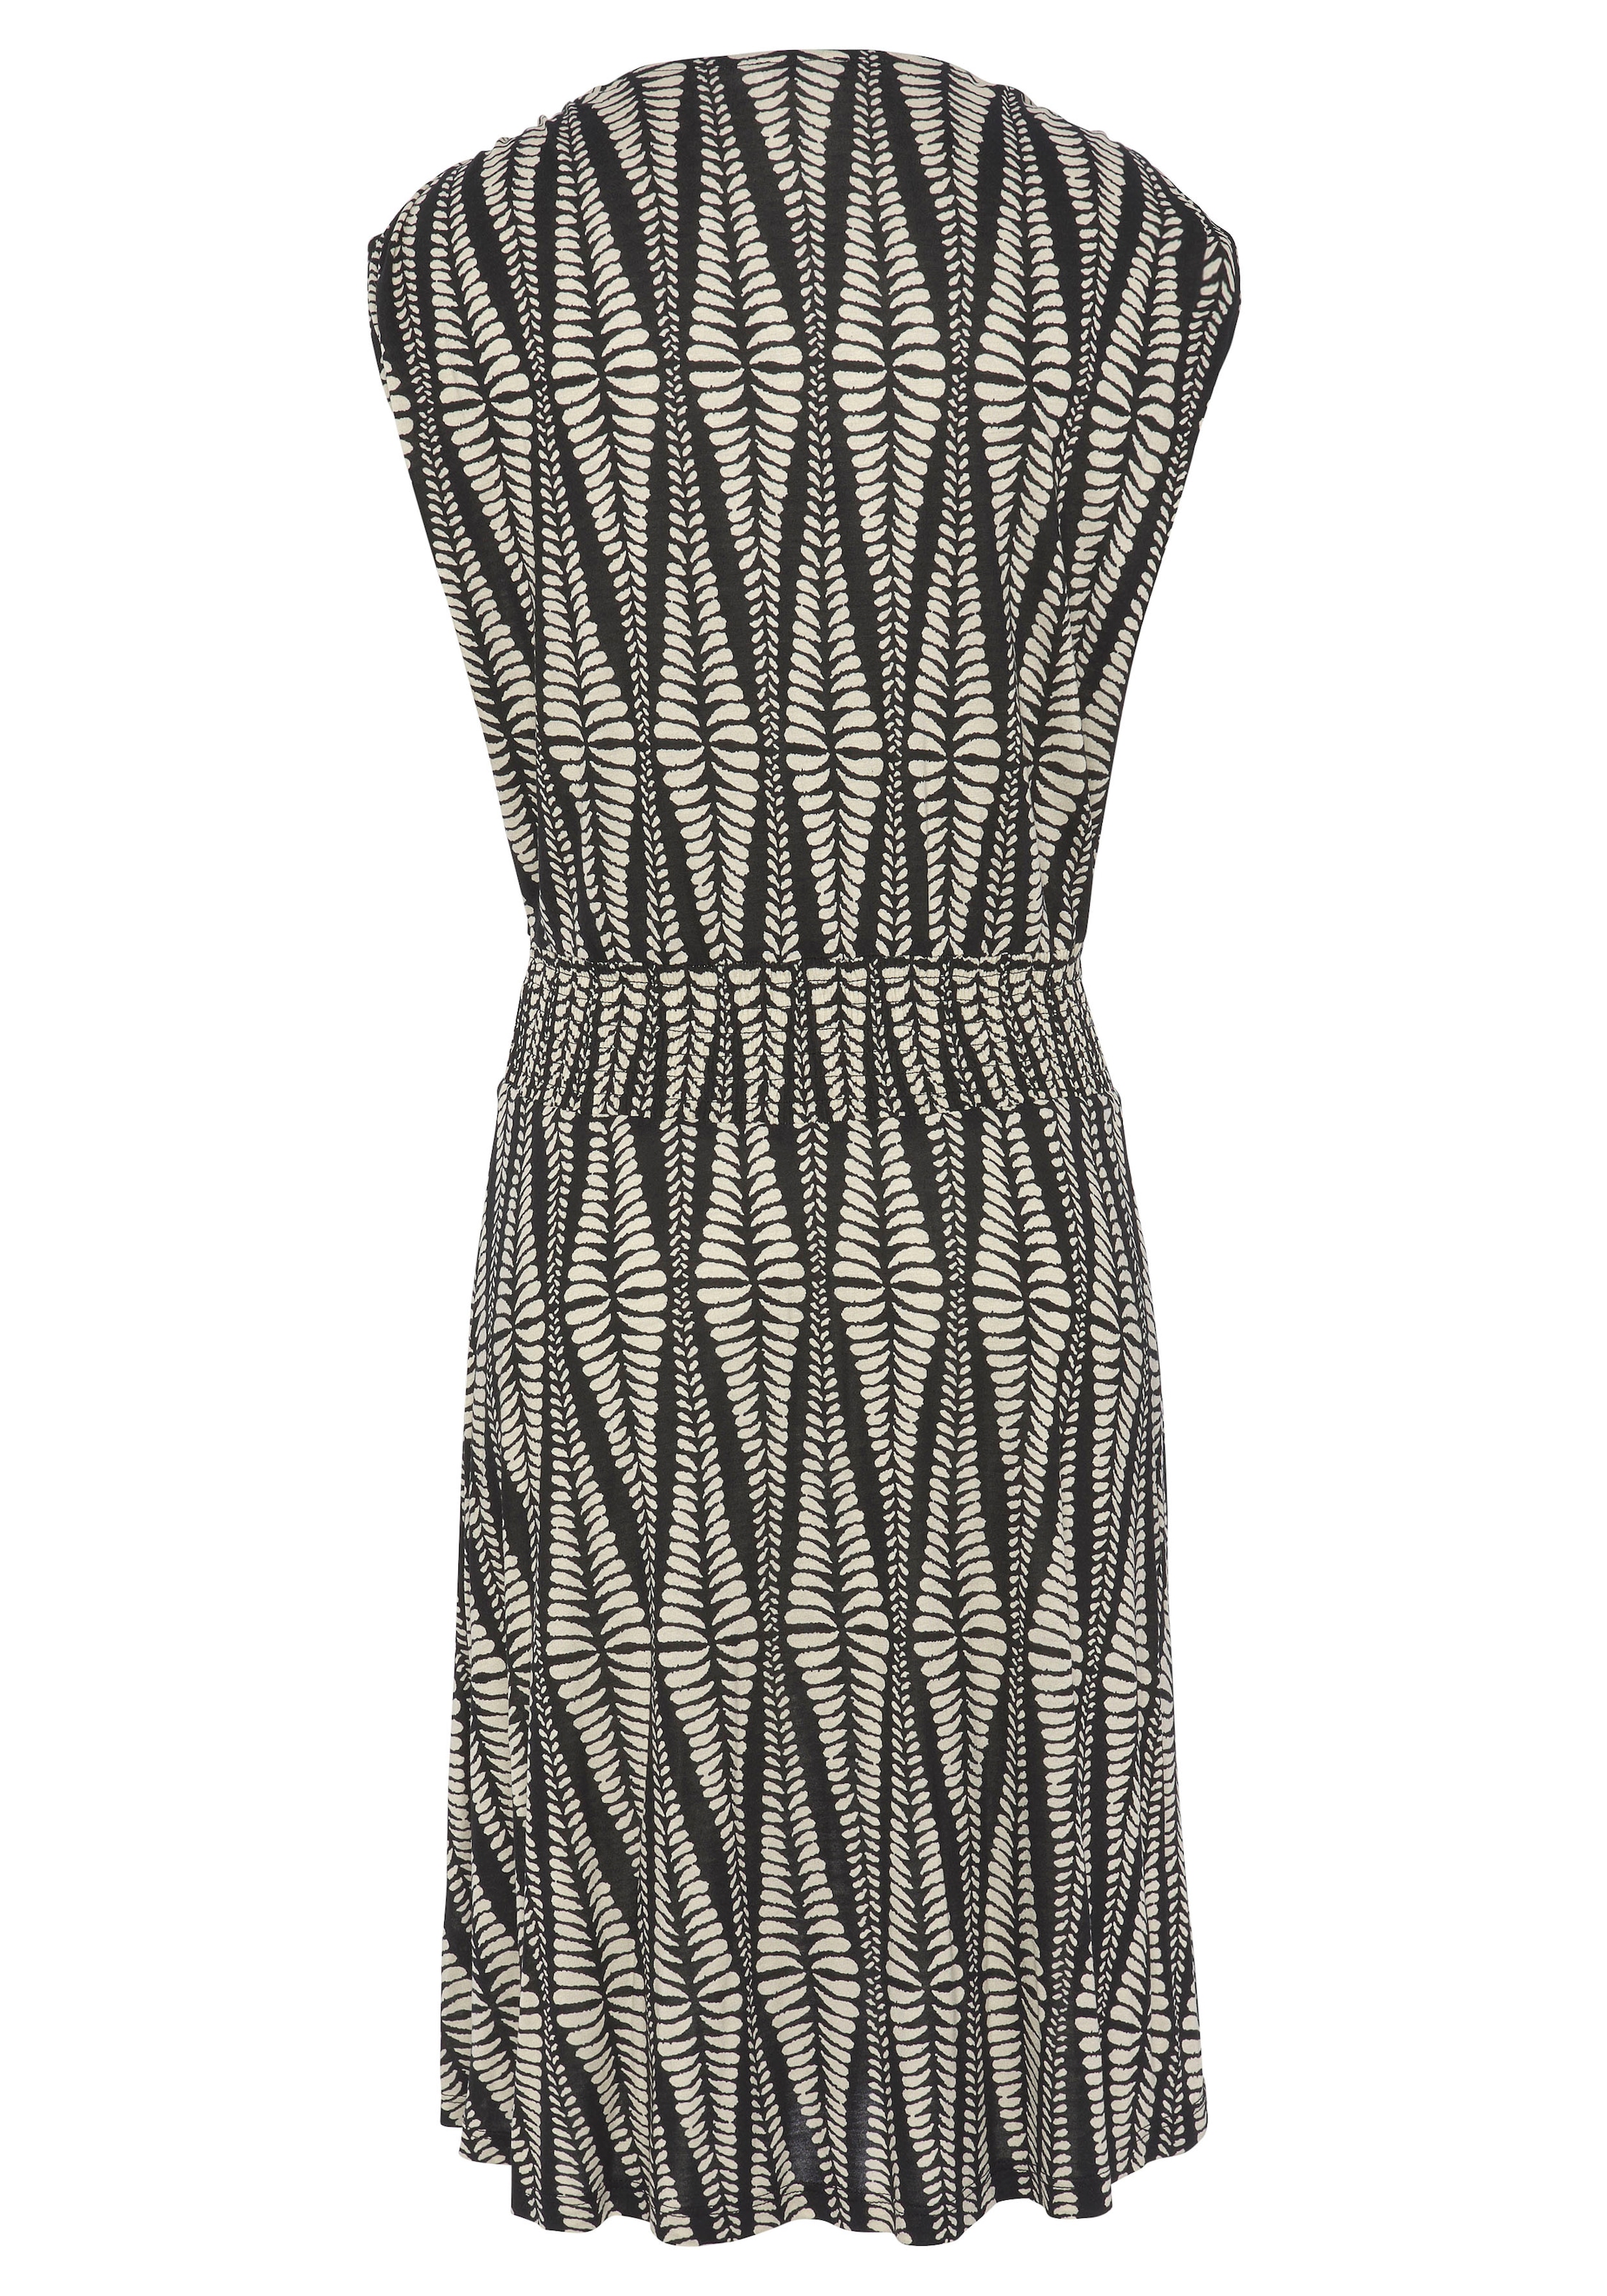 LASCANA Jerseykleid, mit breitem Smokbund, kurzes Sommerkleid im Alloverprint, Strandkleid